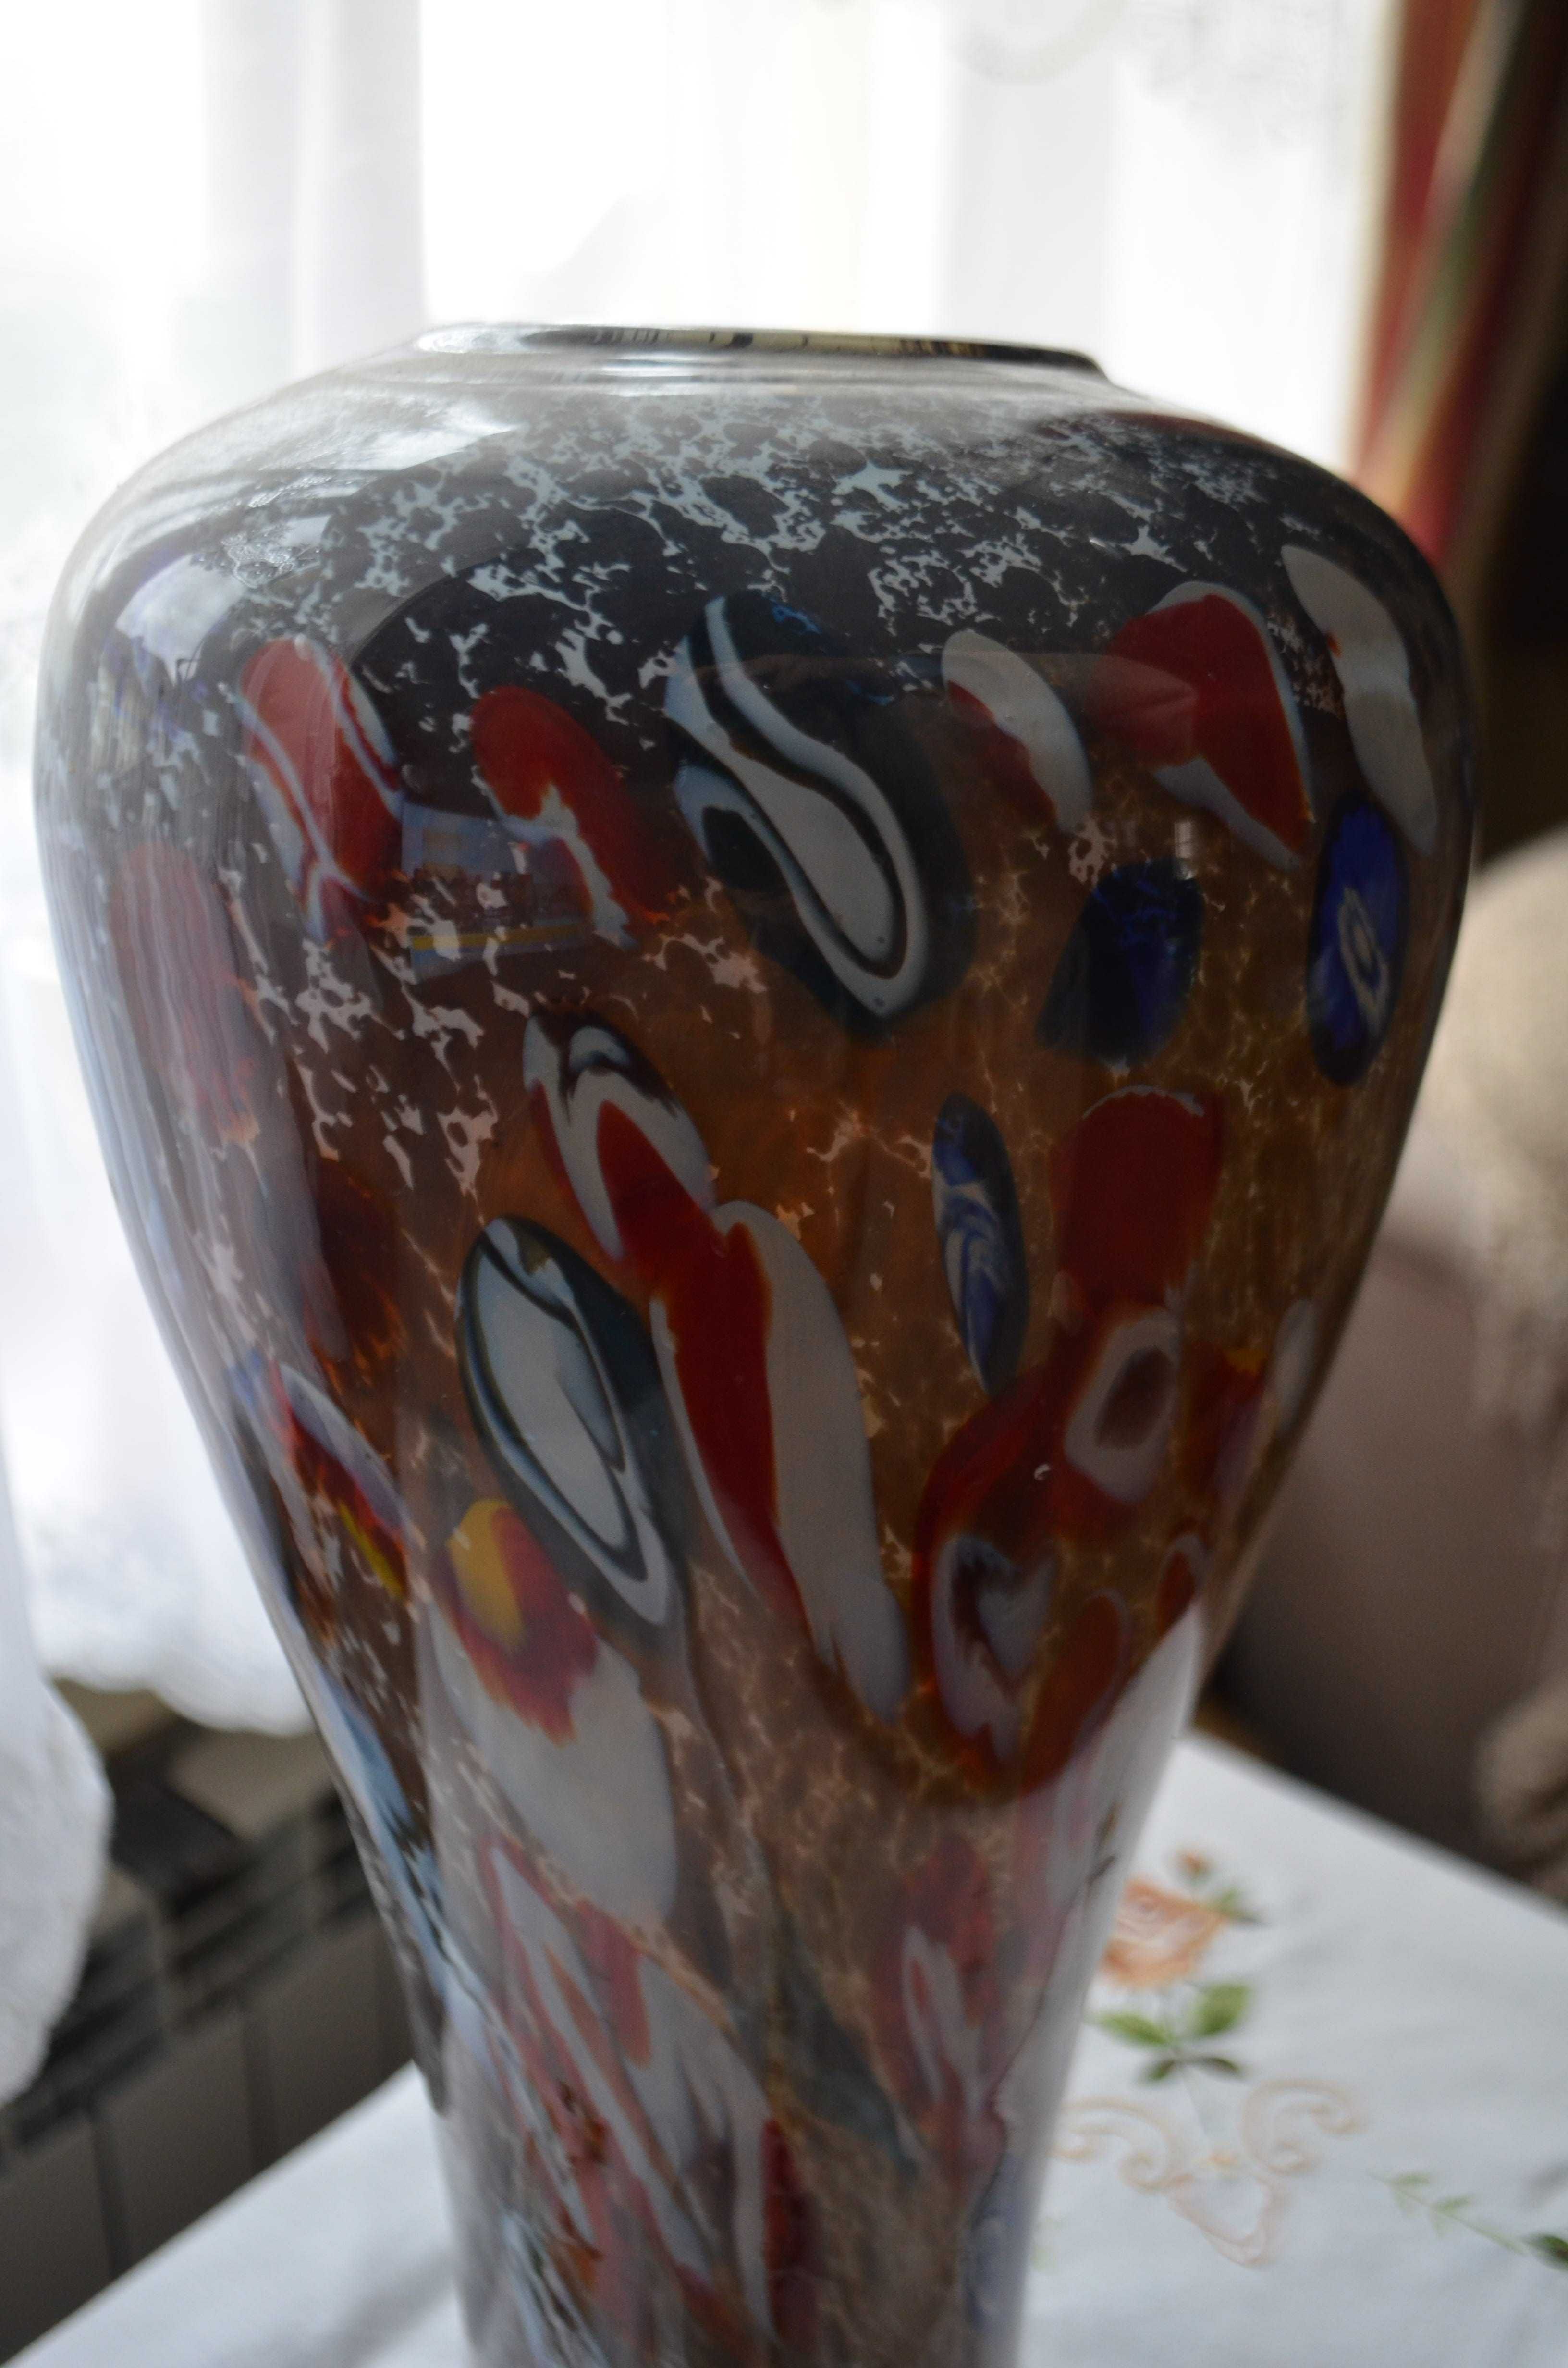 wazon szkło formowane ręcznie duży ok 40 cm